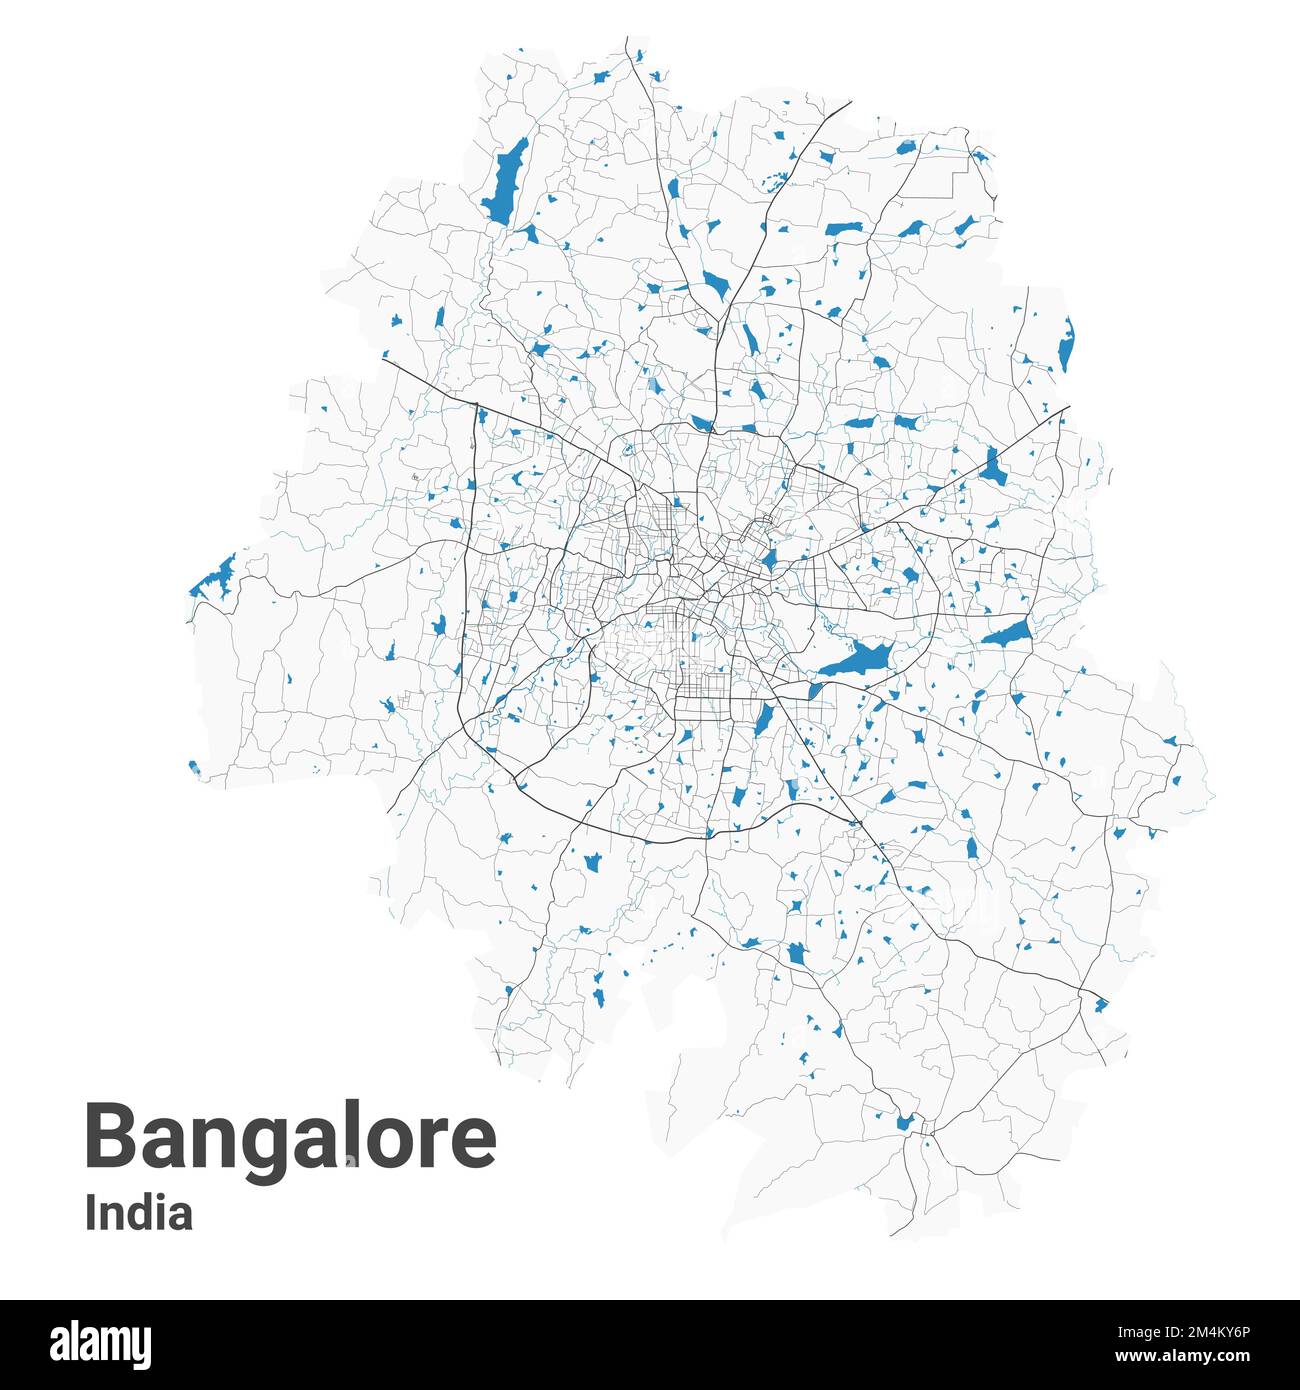 Mappa di Bangalore. Mappa dettagliata dell'area amministrativa della città di Bengaluru. Panorama urbano. Illustrazione vettoriale senza royalty. Mappa stradale con autostrade, fiume Illustrazione Vettoriale